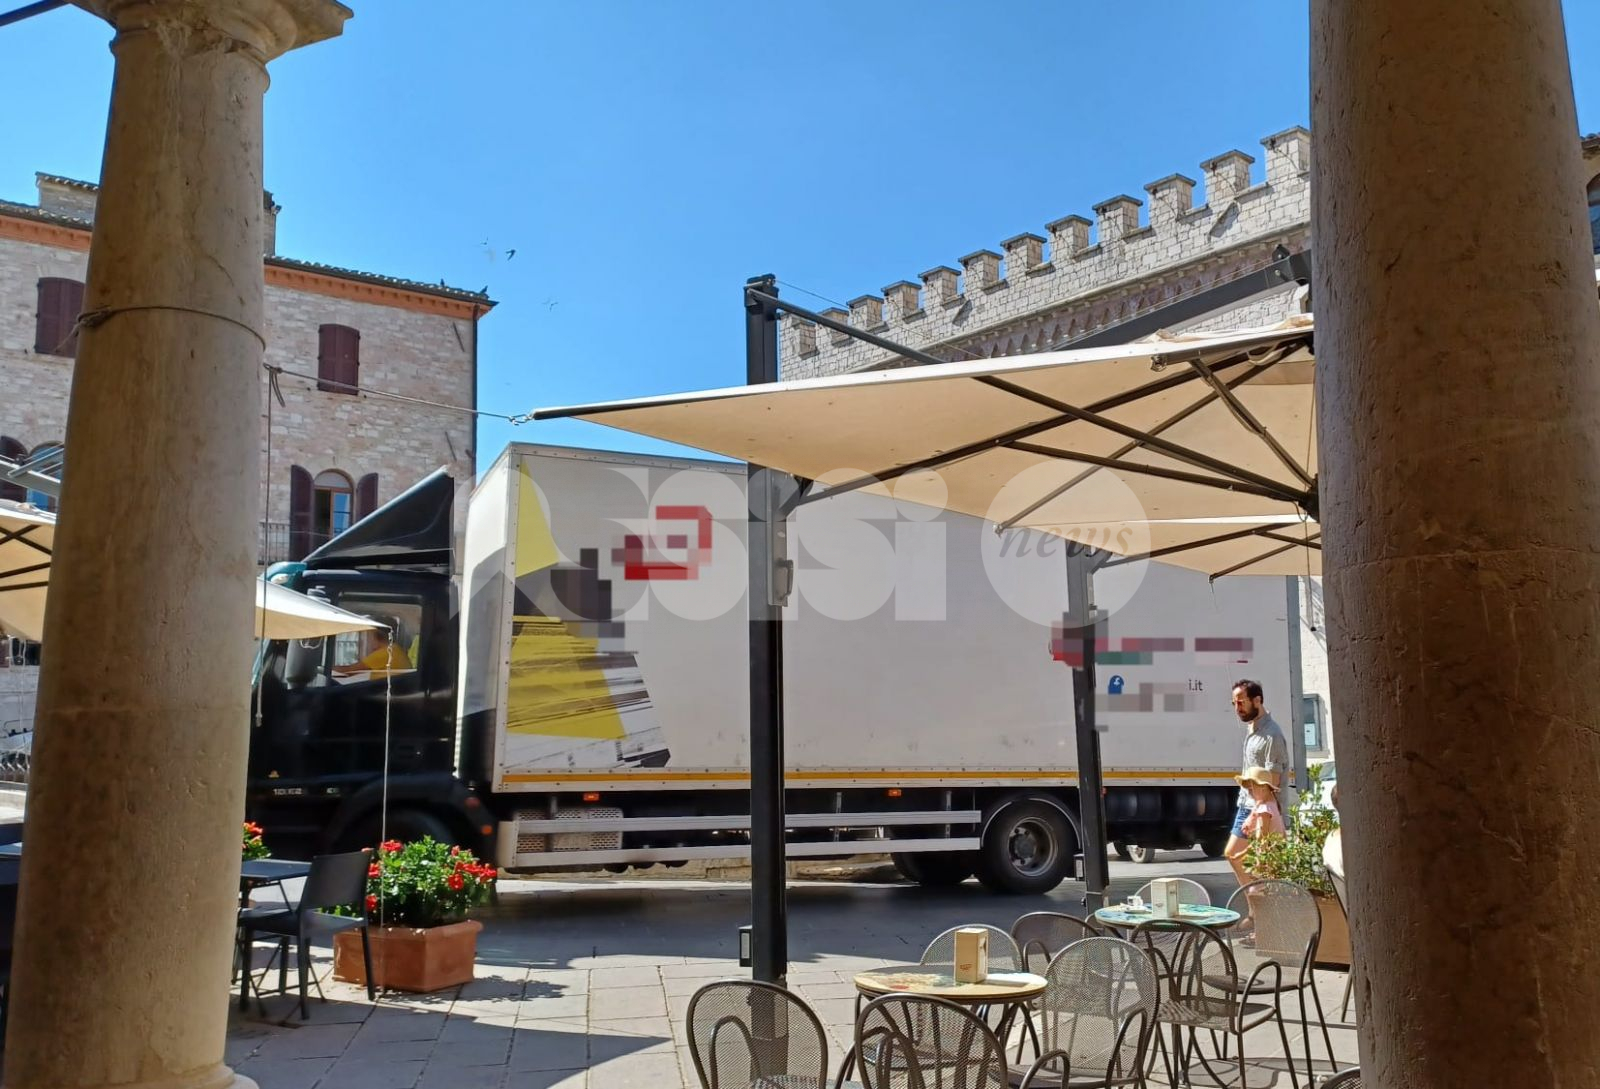 Camion in piazza del Comune, traffico in tilt e maxi multa (foto)